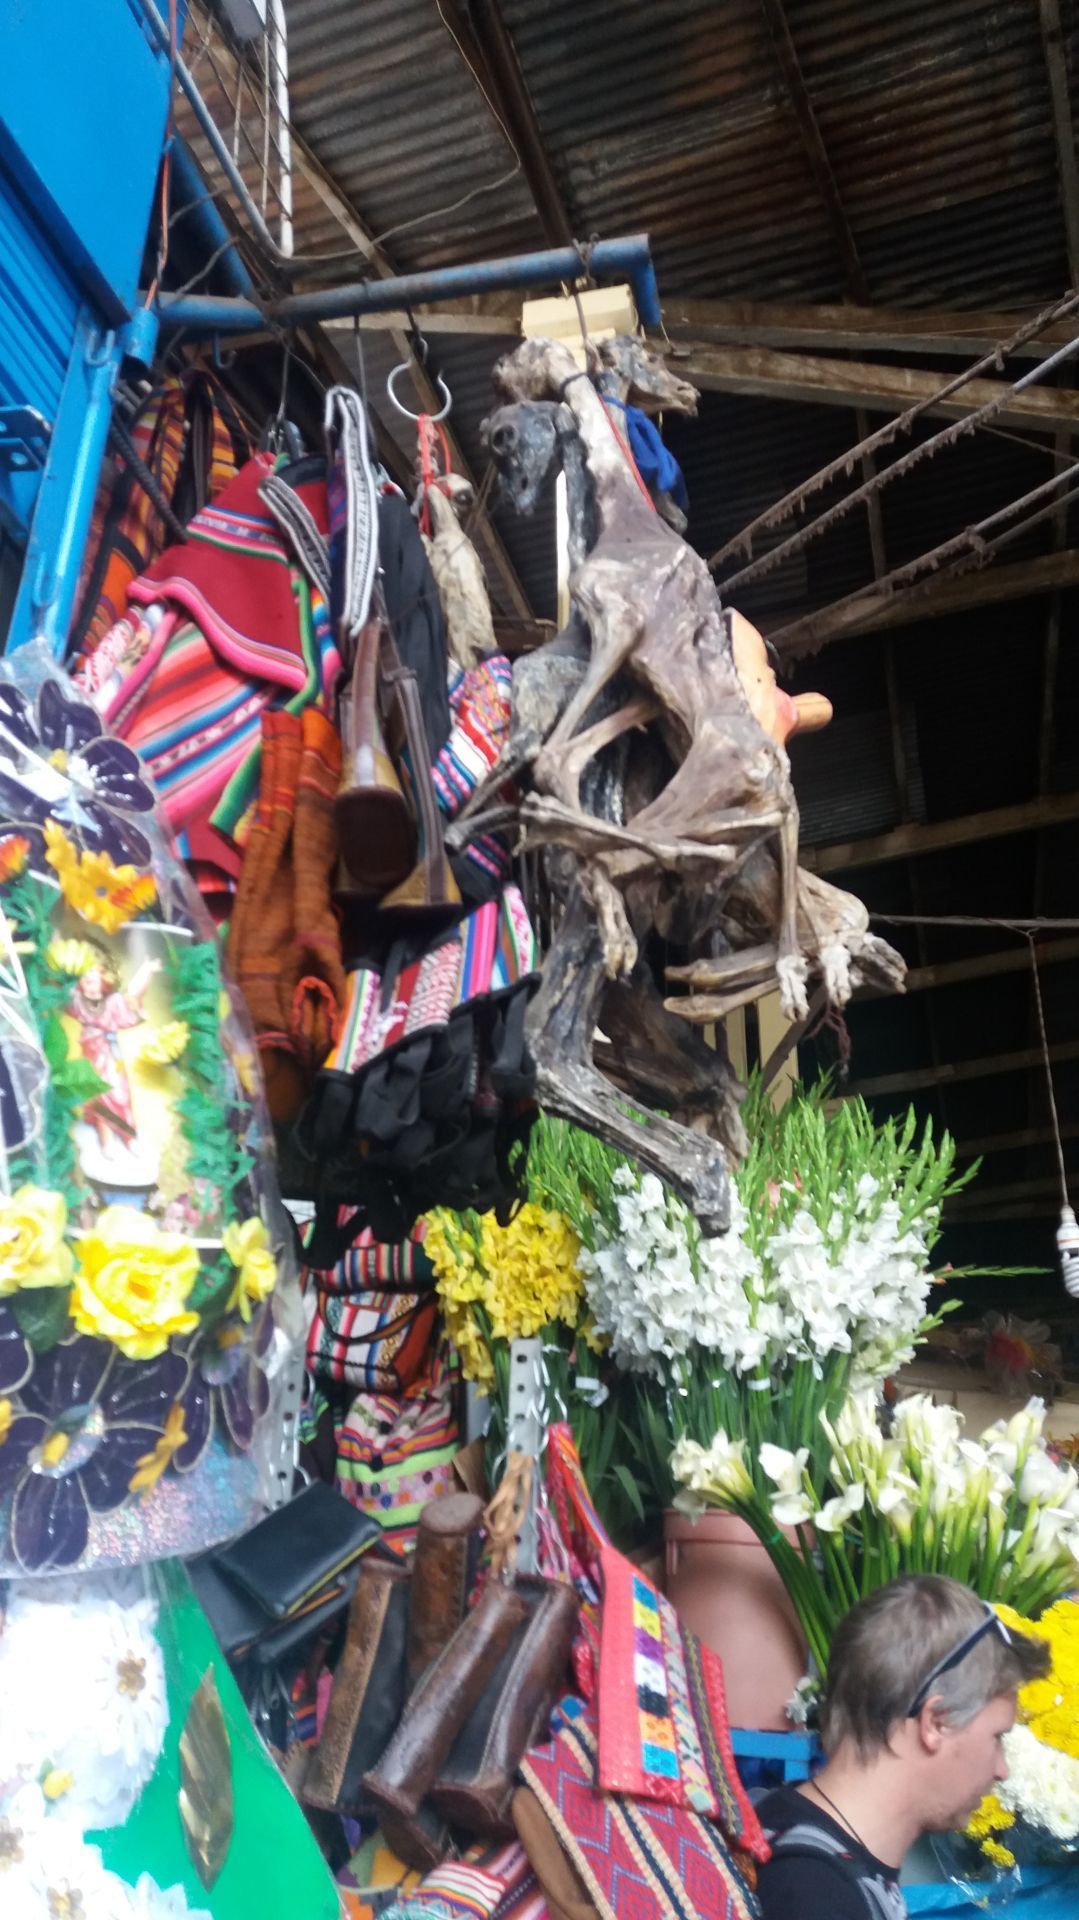 Ja, richtig gesehen: Auf dem Markt hängen getrocknete Lamaföten. Sie gelten als Glücksbringer. Schon für die Inkas waren es heilige Opfertiere.